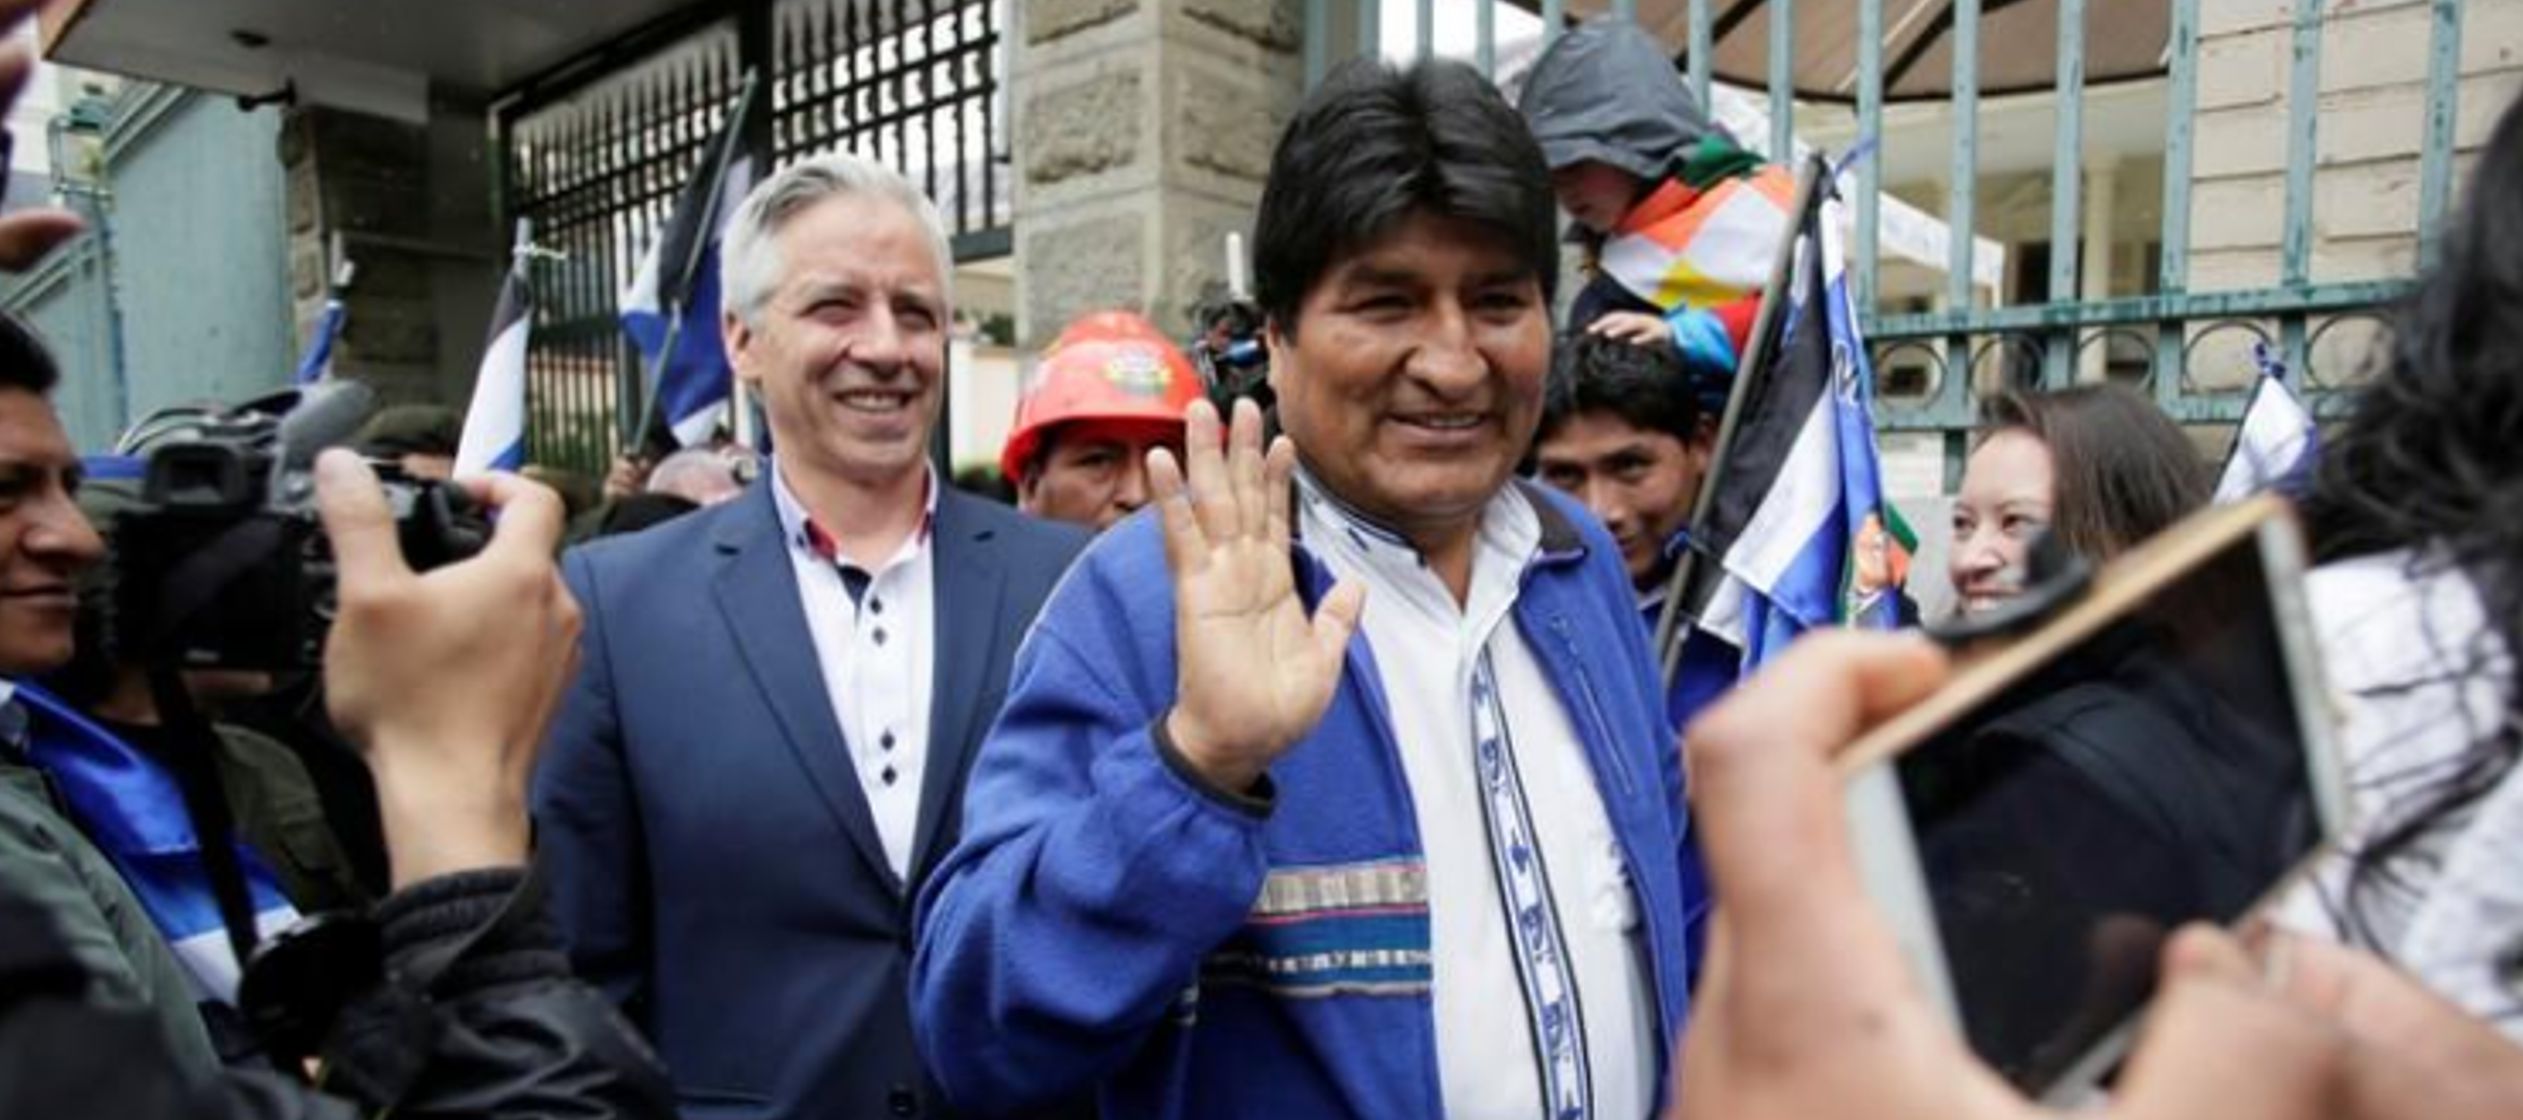 Sus opositores acusan a Morales de intentar perpetuarse en el poder y anunciaron una 